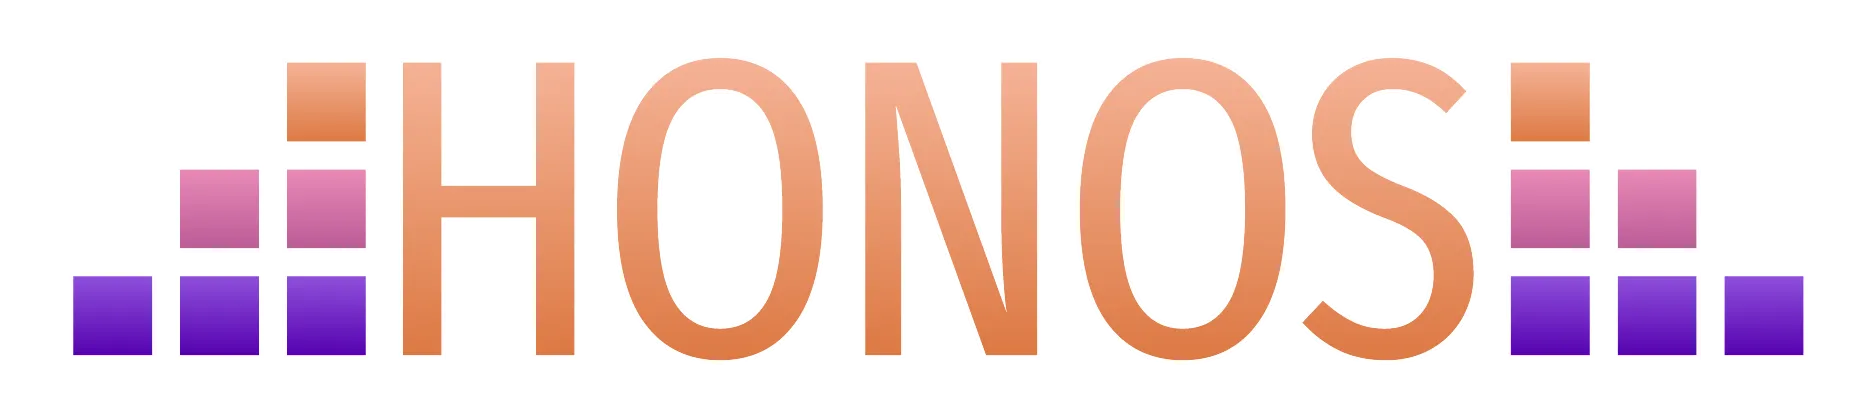 Honos OG04 Official logo